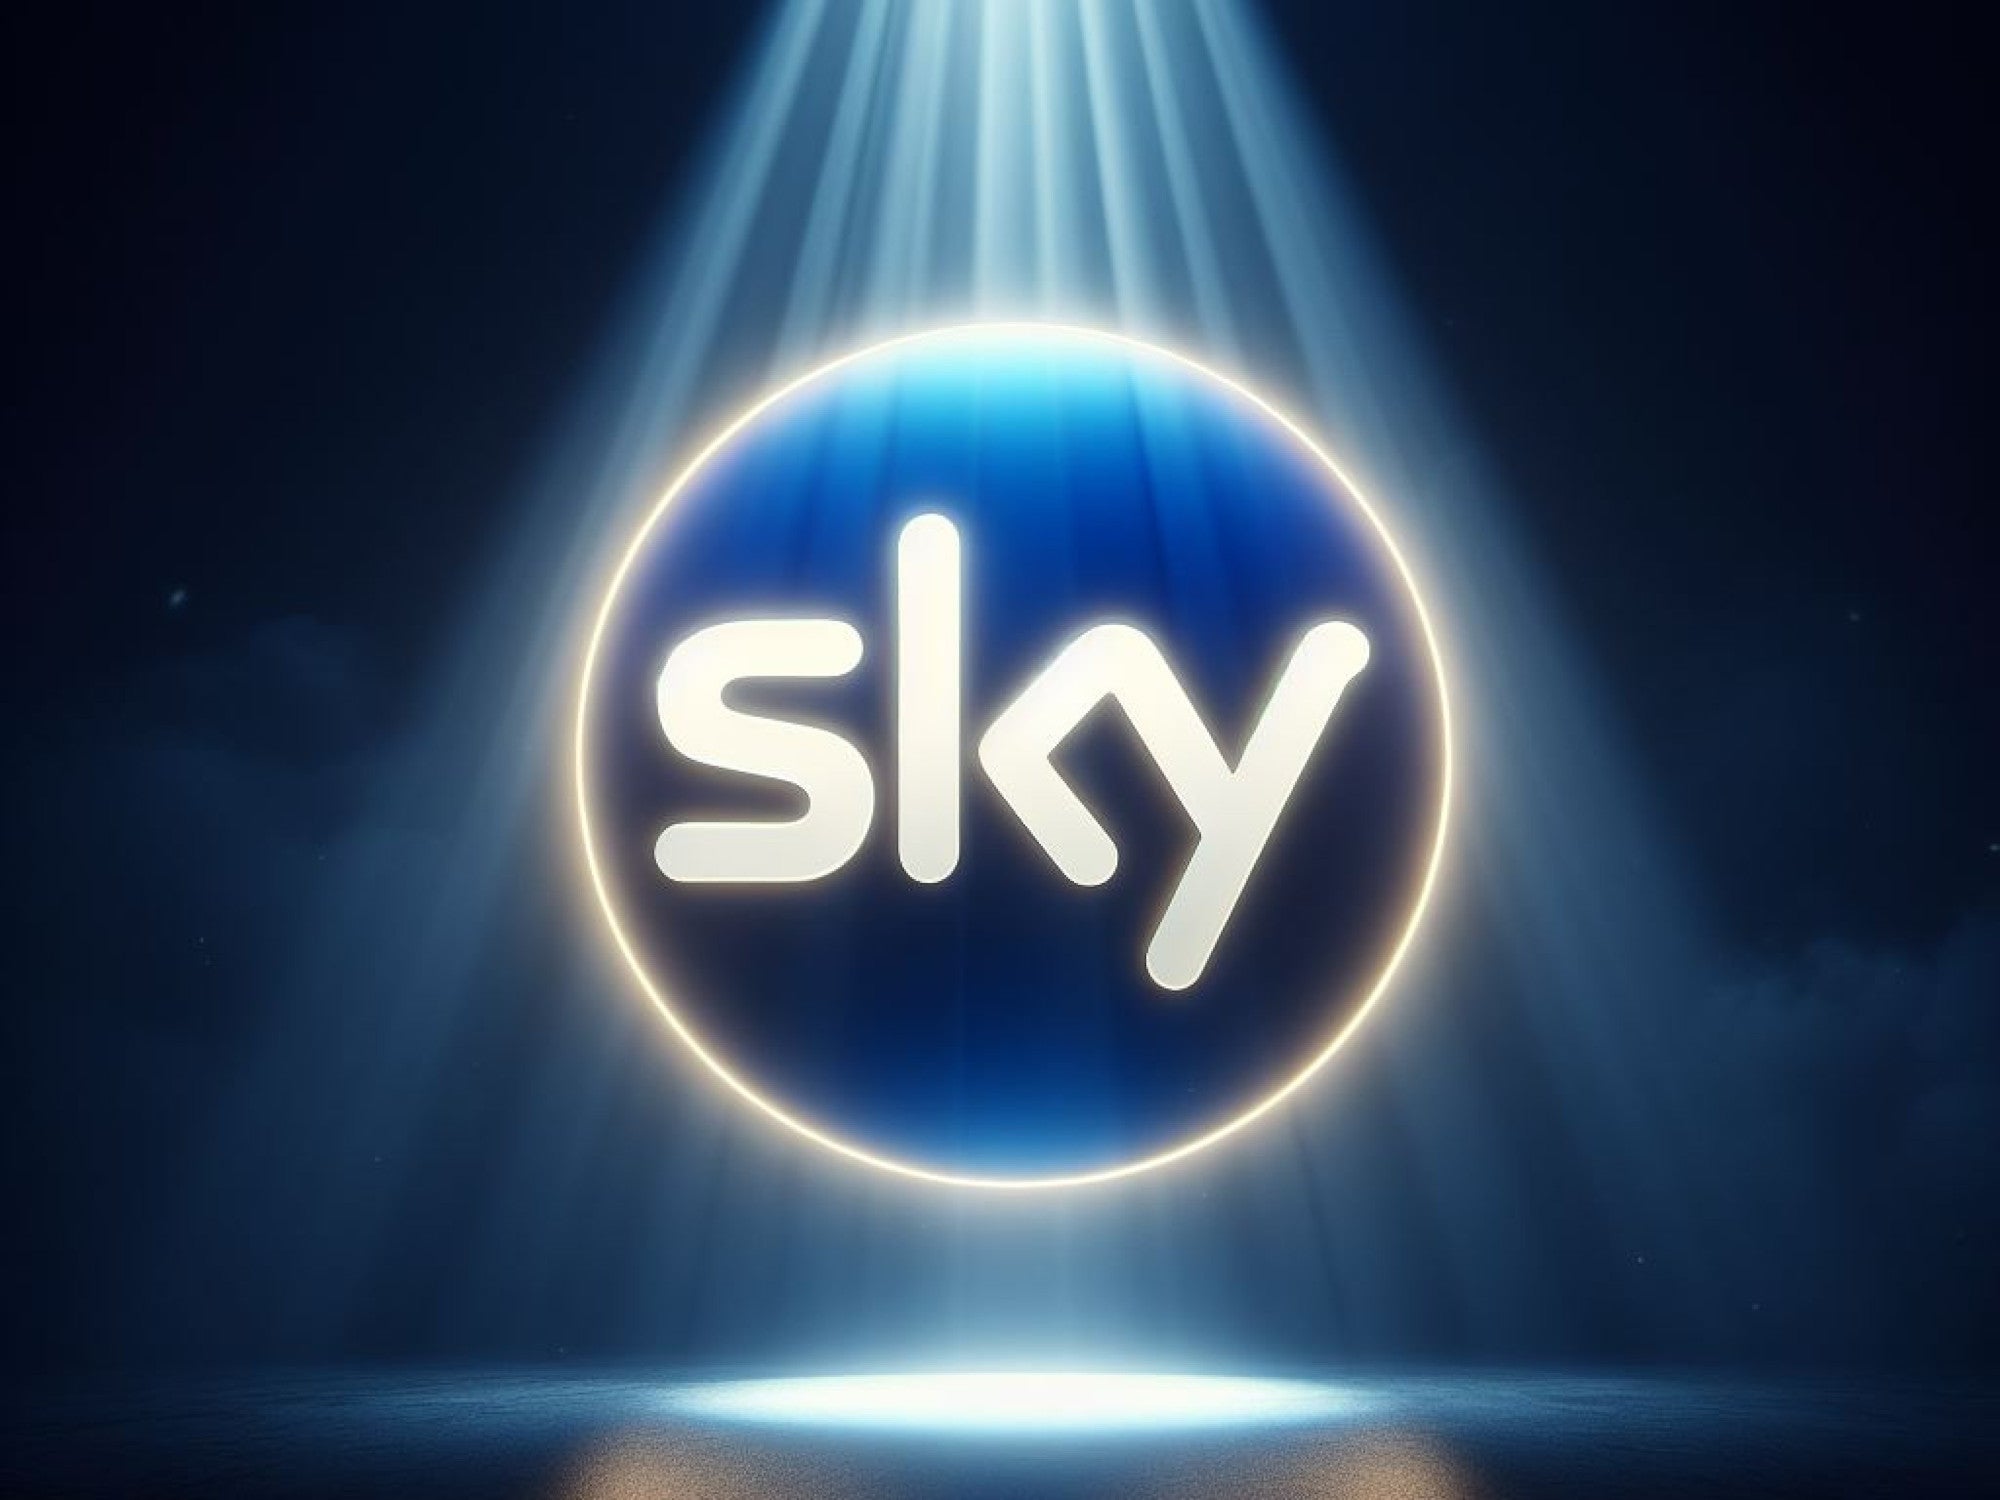 #Sky: Spektakuläre Neuerungen im März